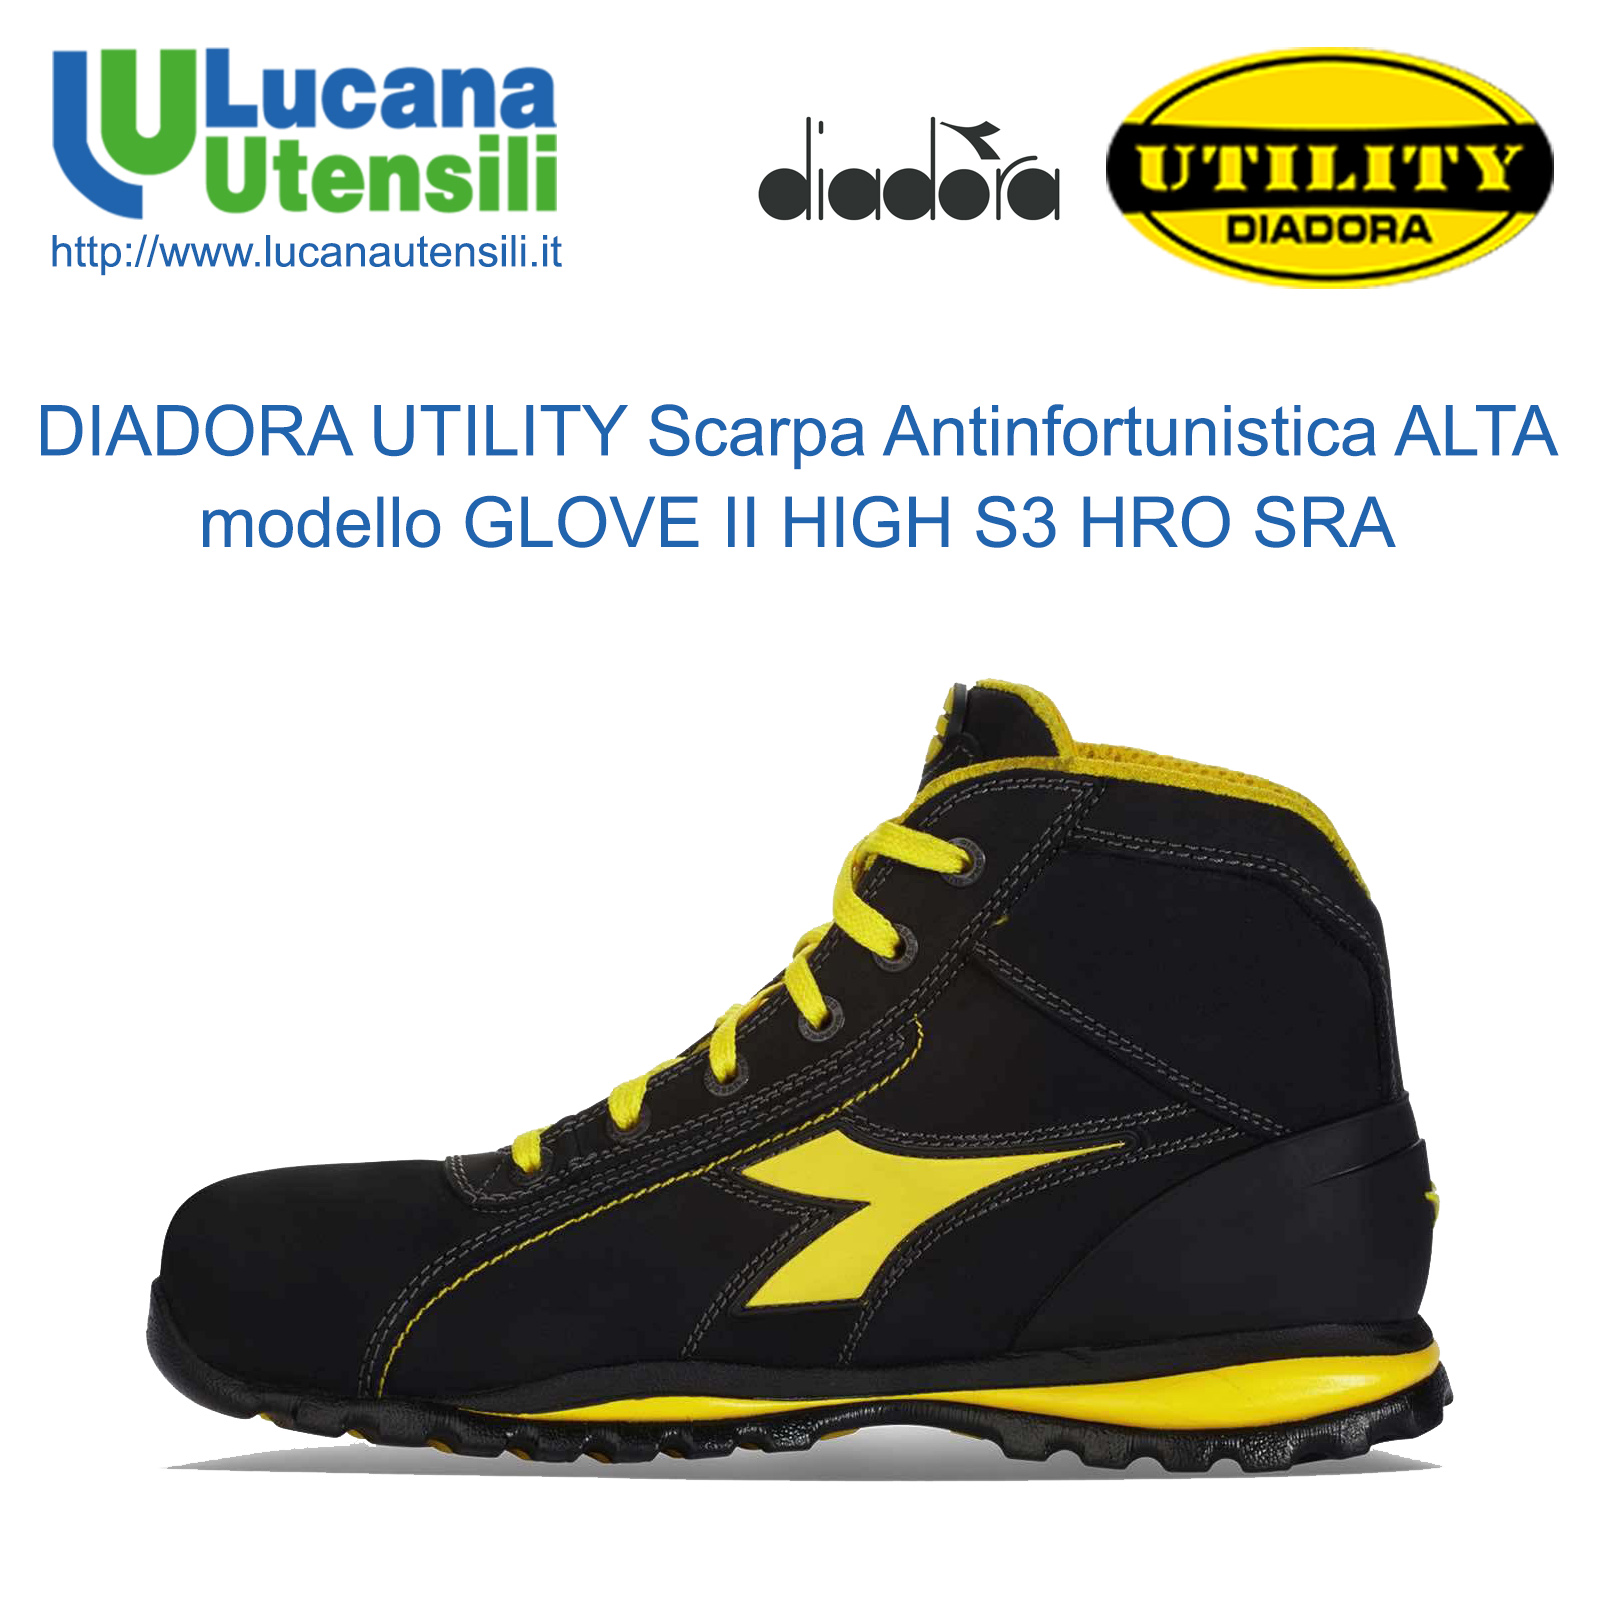 diadora utility 2019